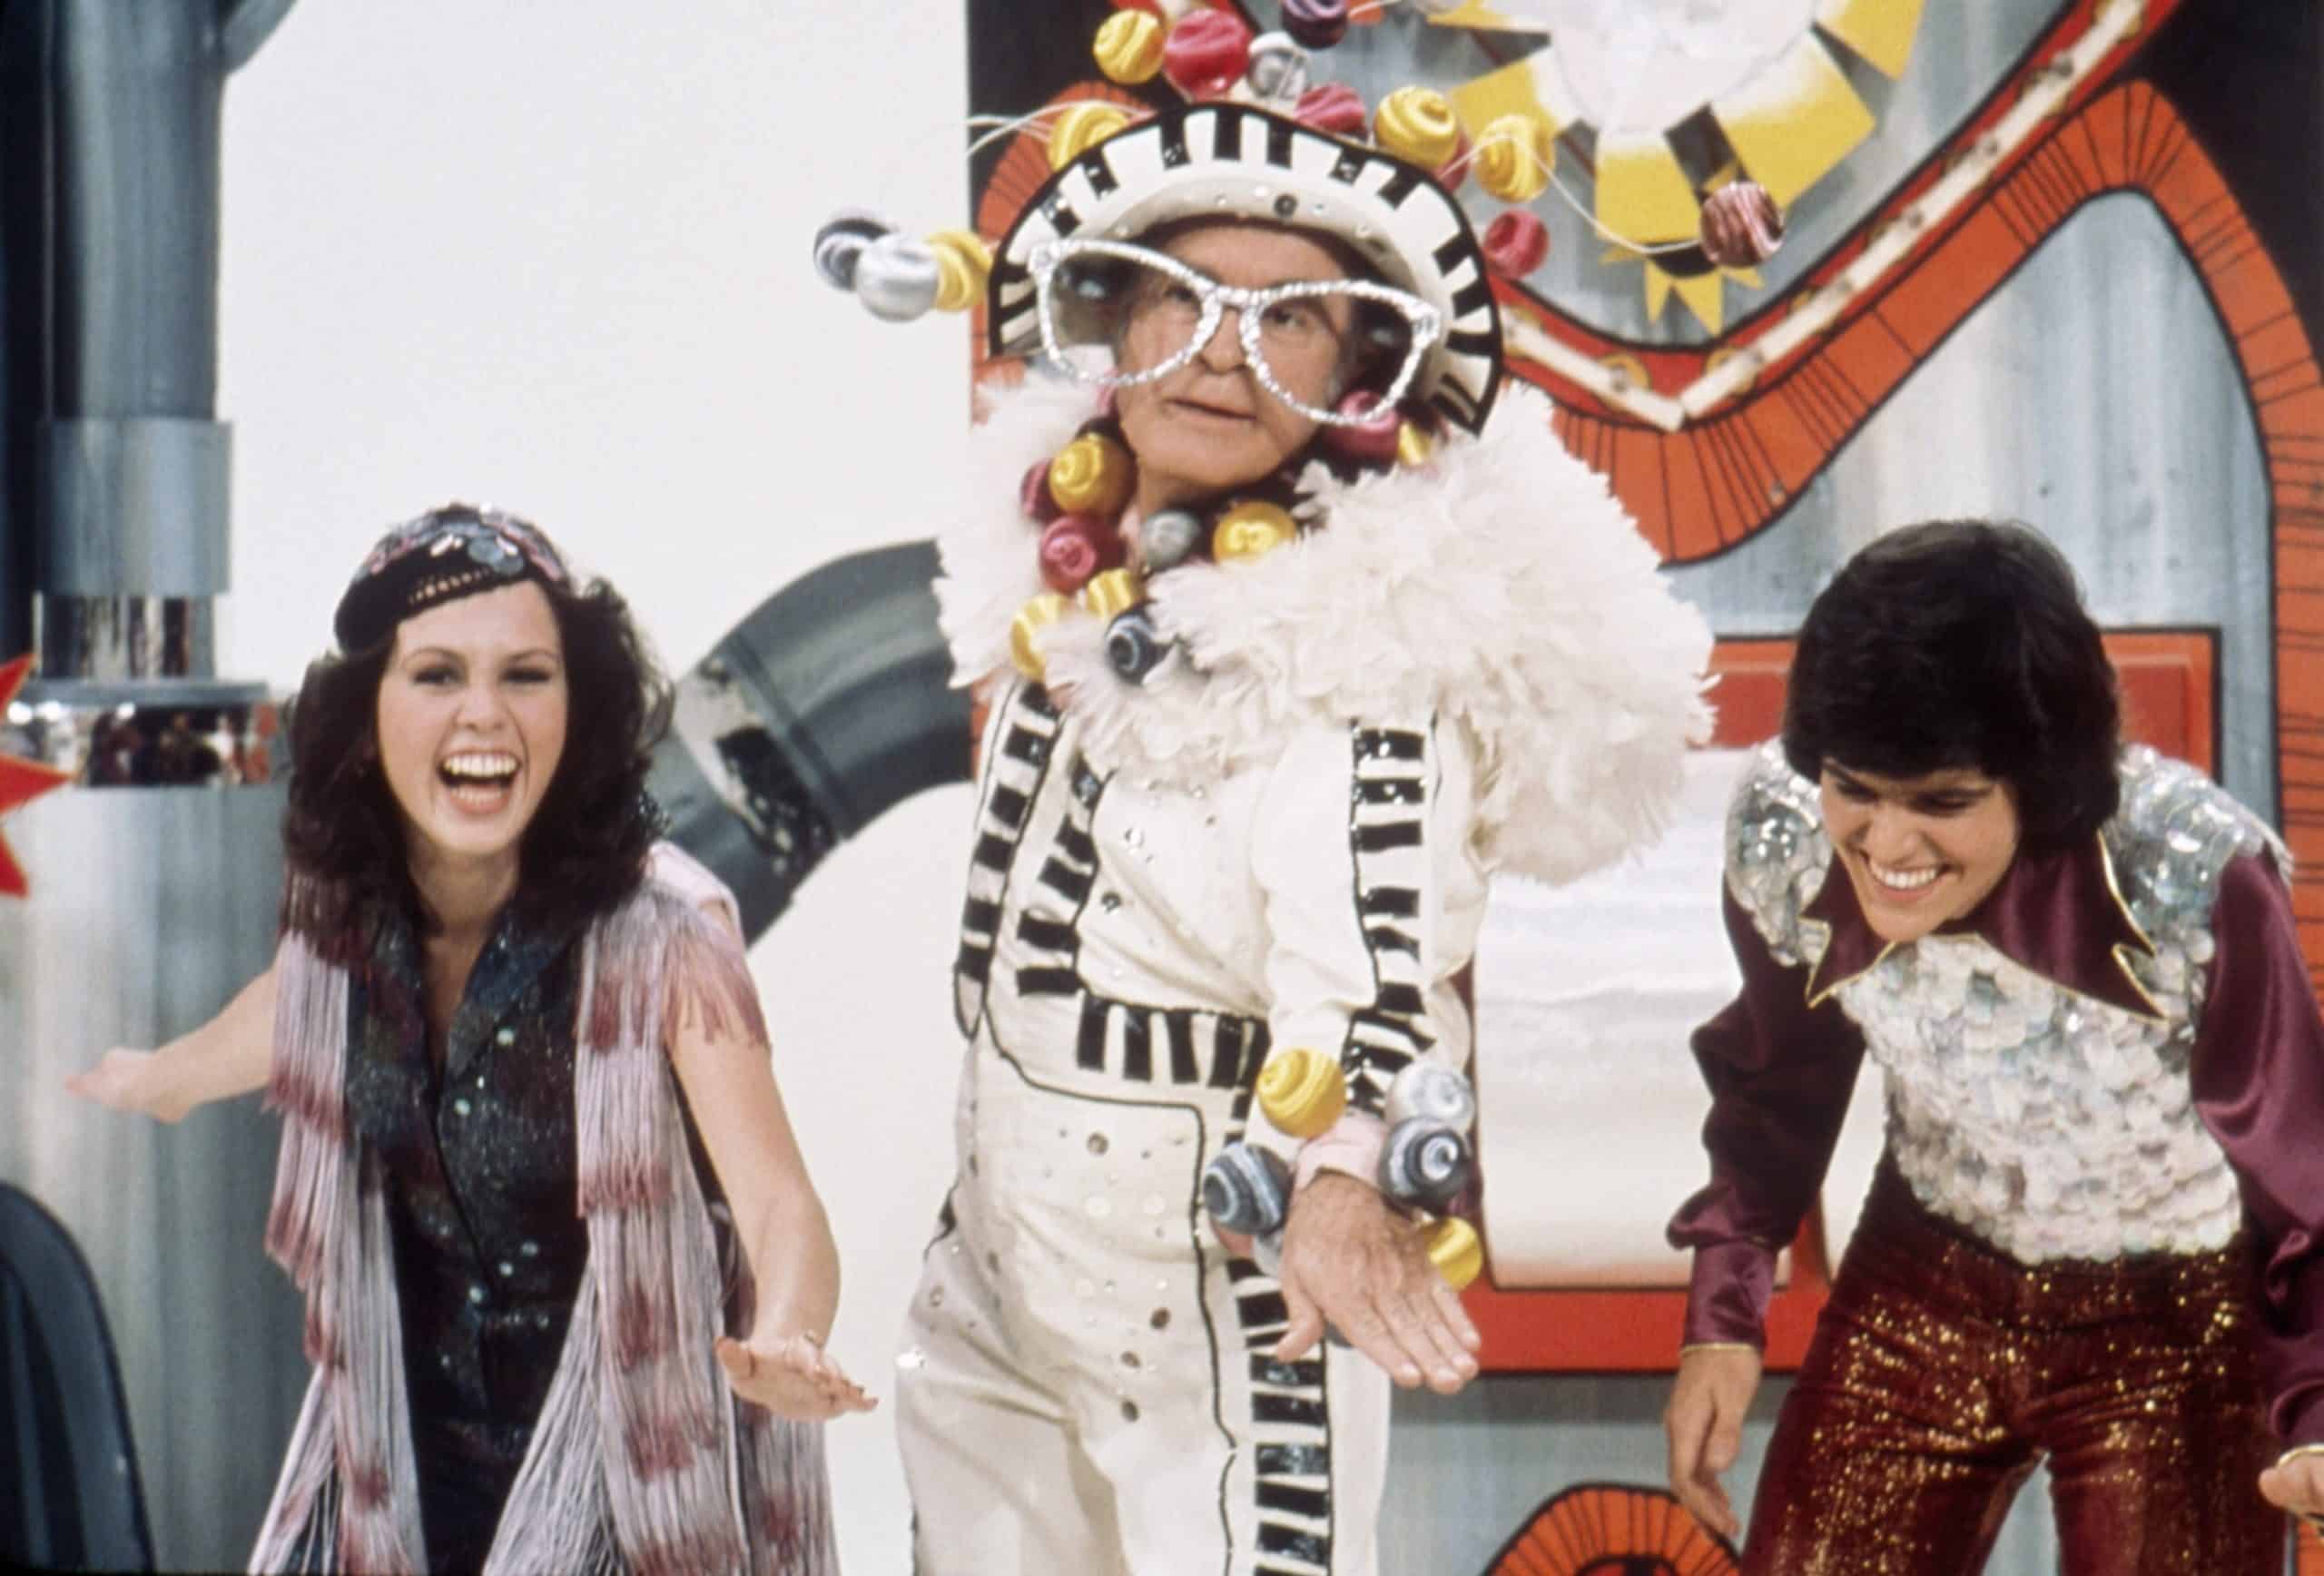 DONNY AND MARIE, from left: Marie Osmond, Bob Hope (as Elton John), Donny Osmond, (Season 1, pilot episode, aired November 16, 1975), 1975-1979